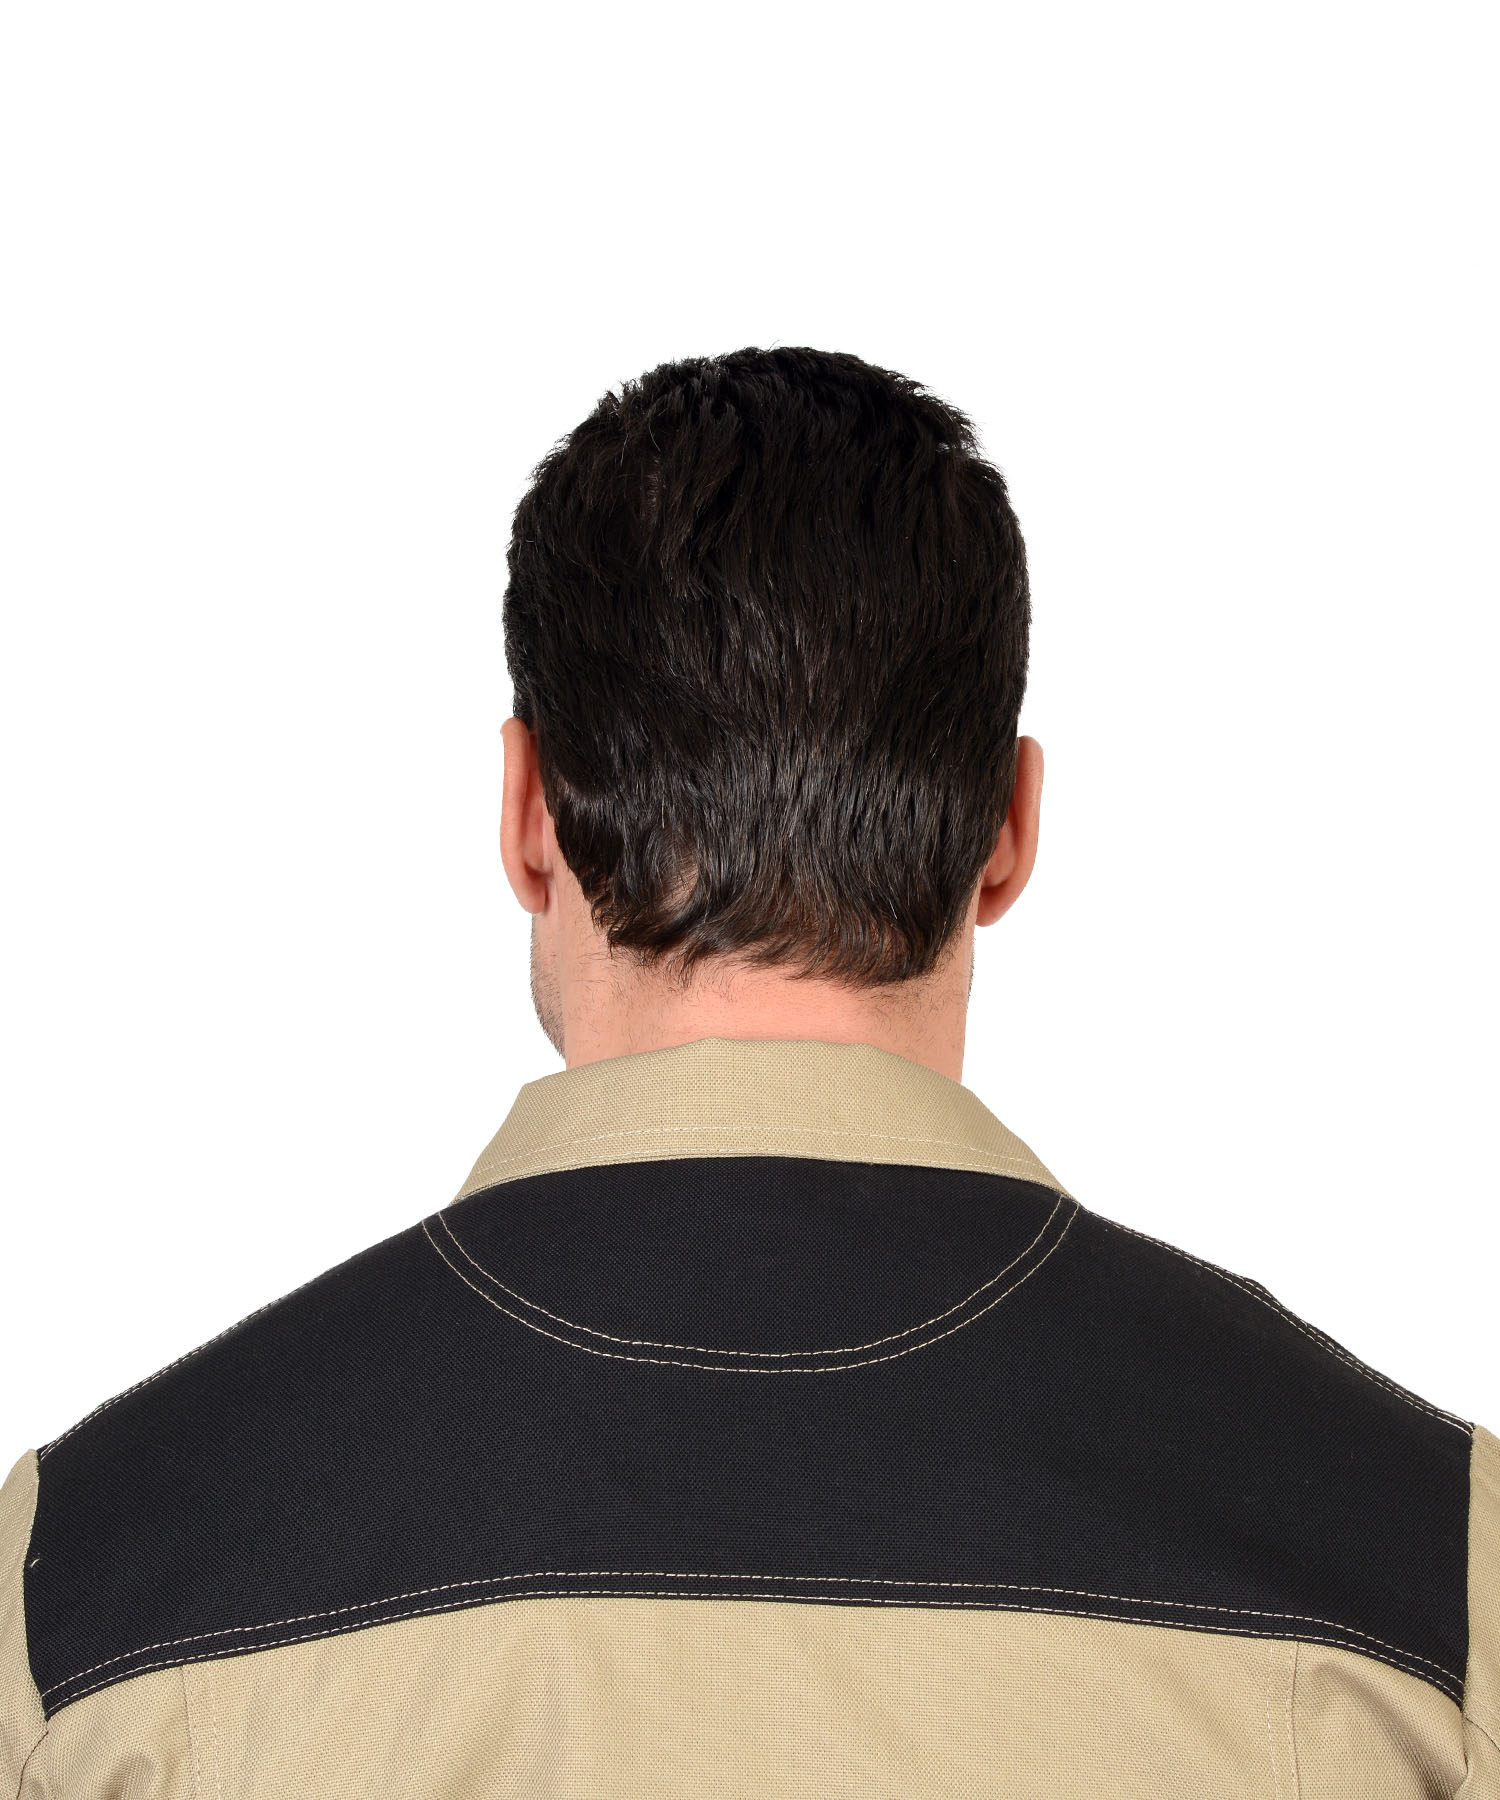 Куртка ВЕСТ-ВОРК коротка, бежевая с черным